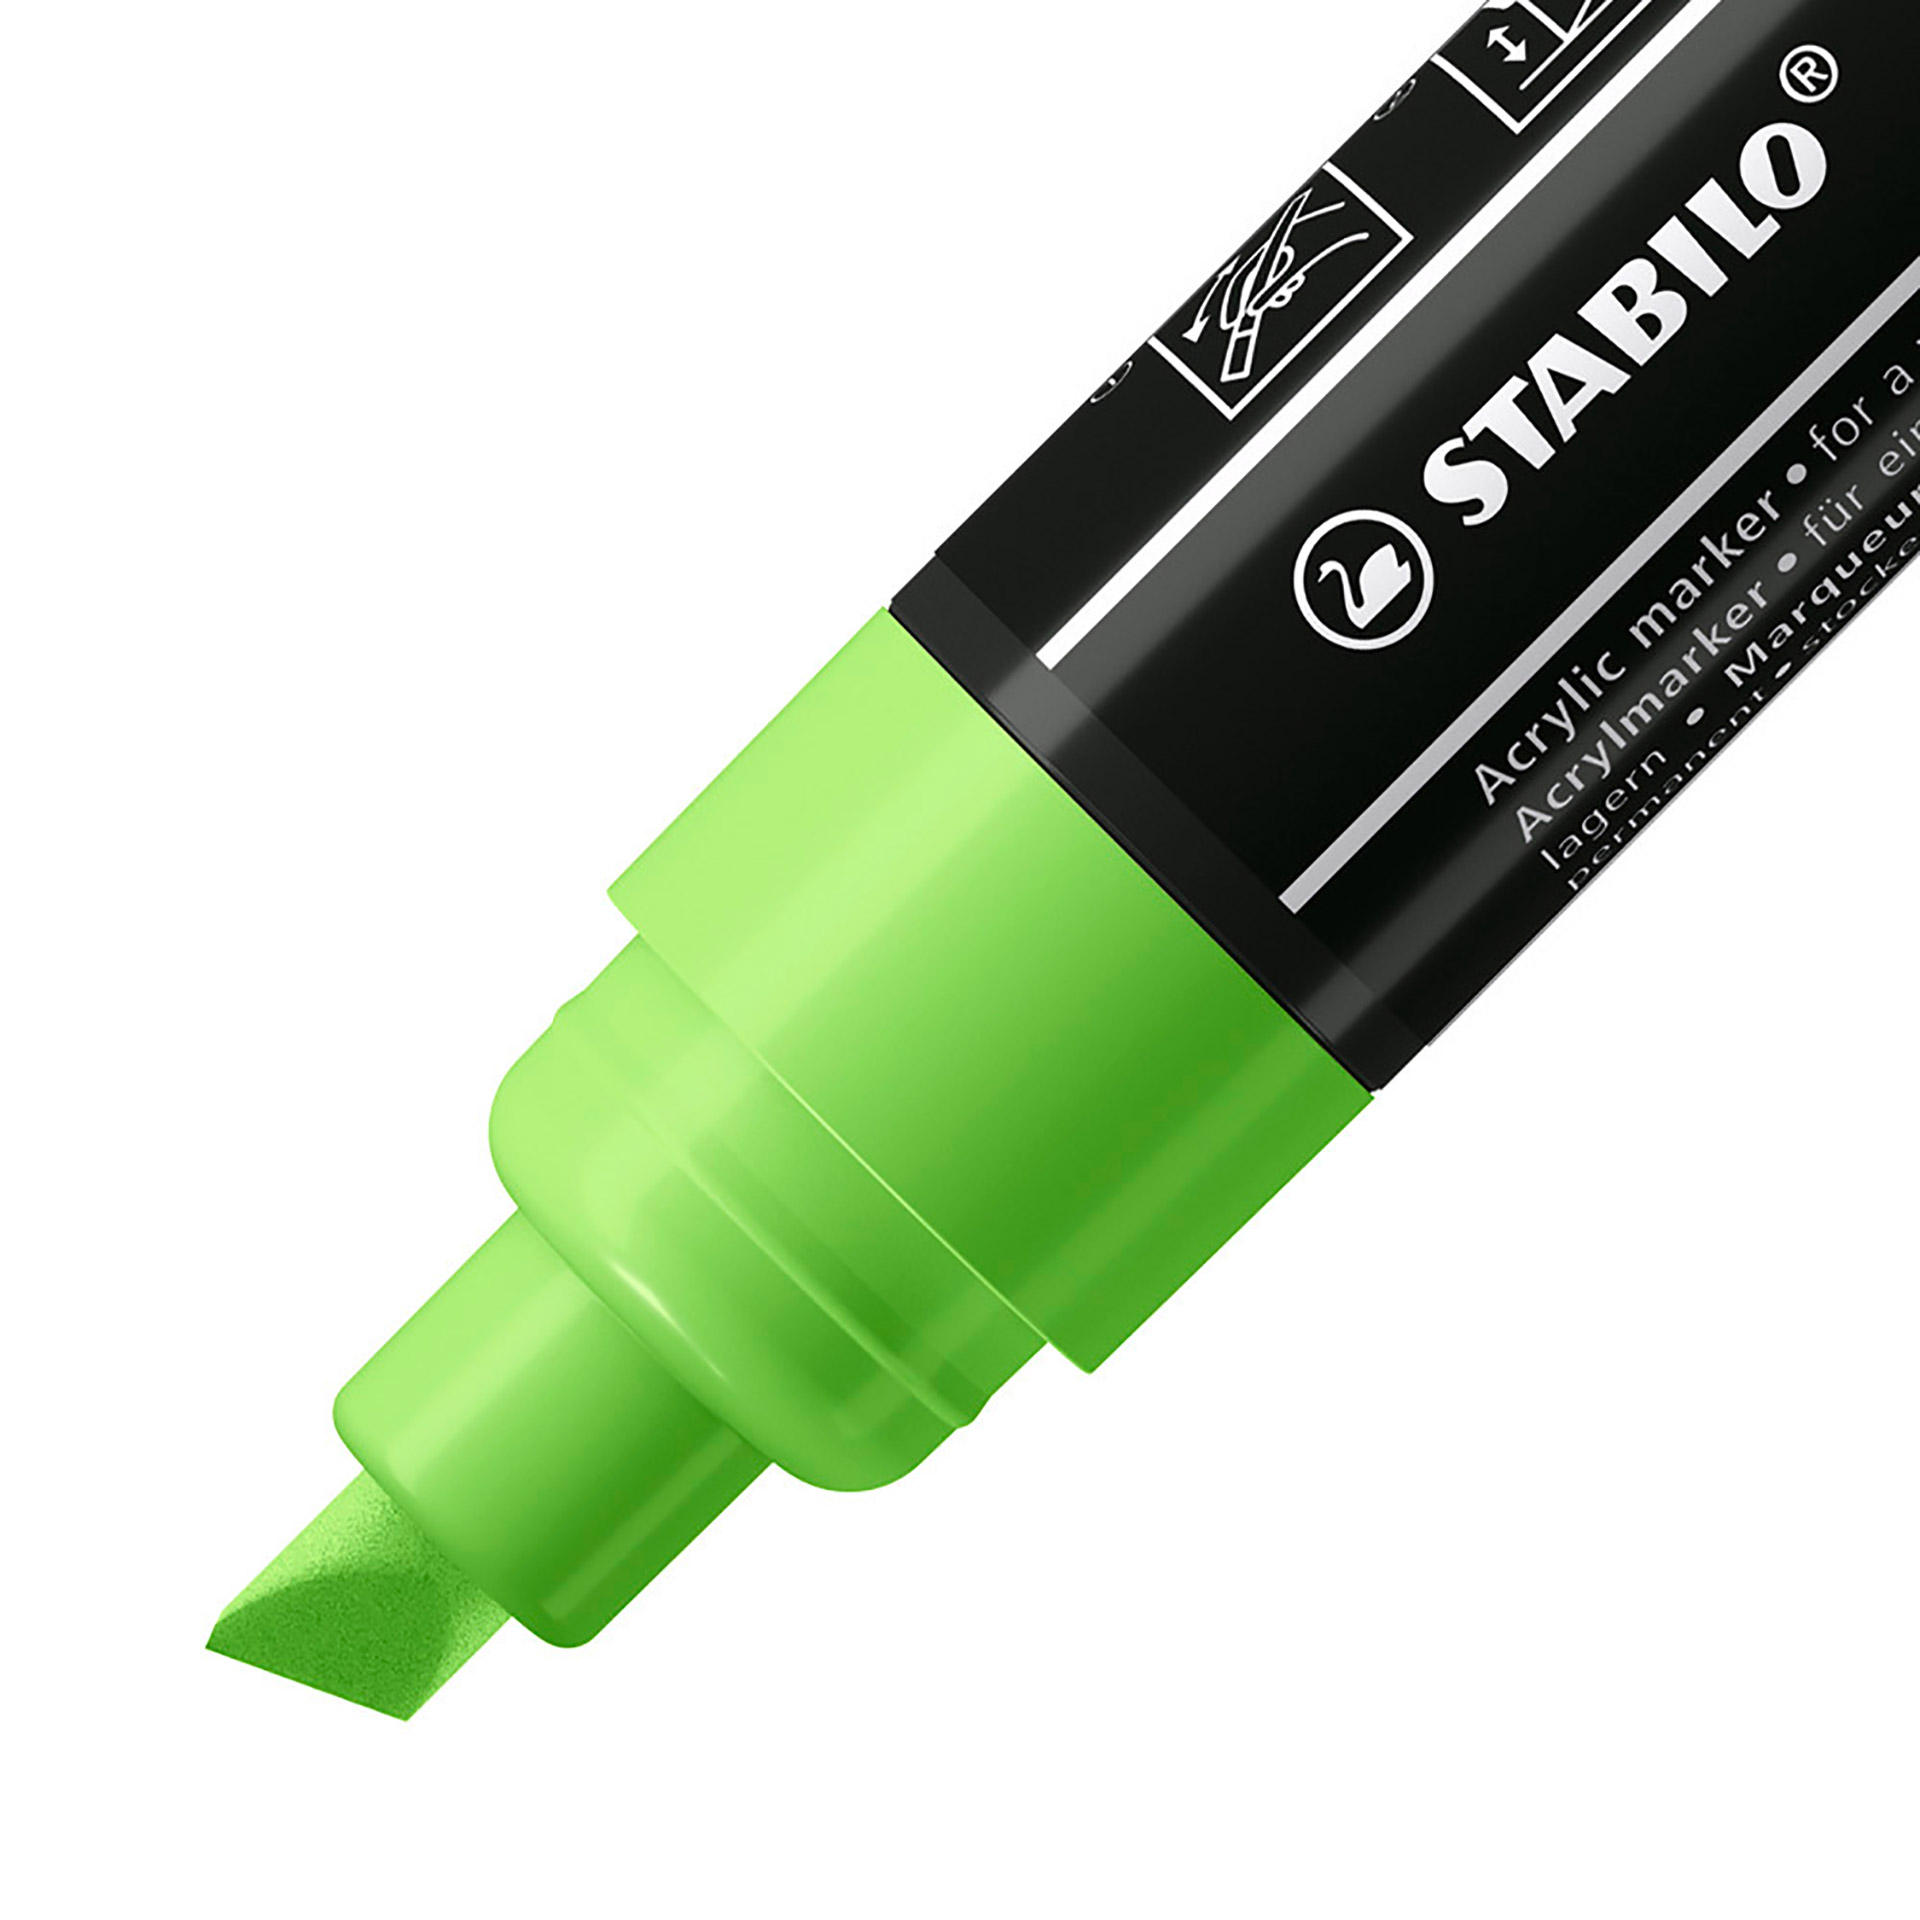 STABILO FREE Acrylic - T800C Punta a scalpello 4-10mm - Confezione da 5 - Verde, , large